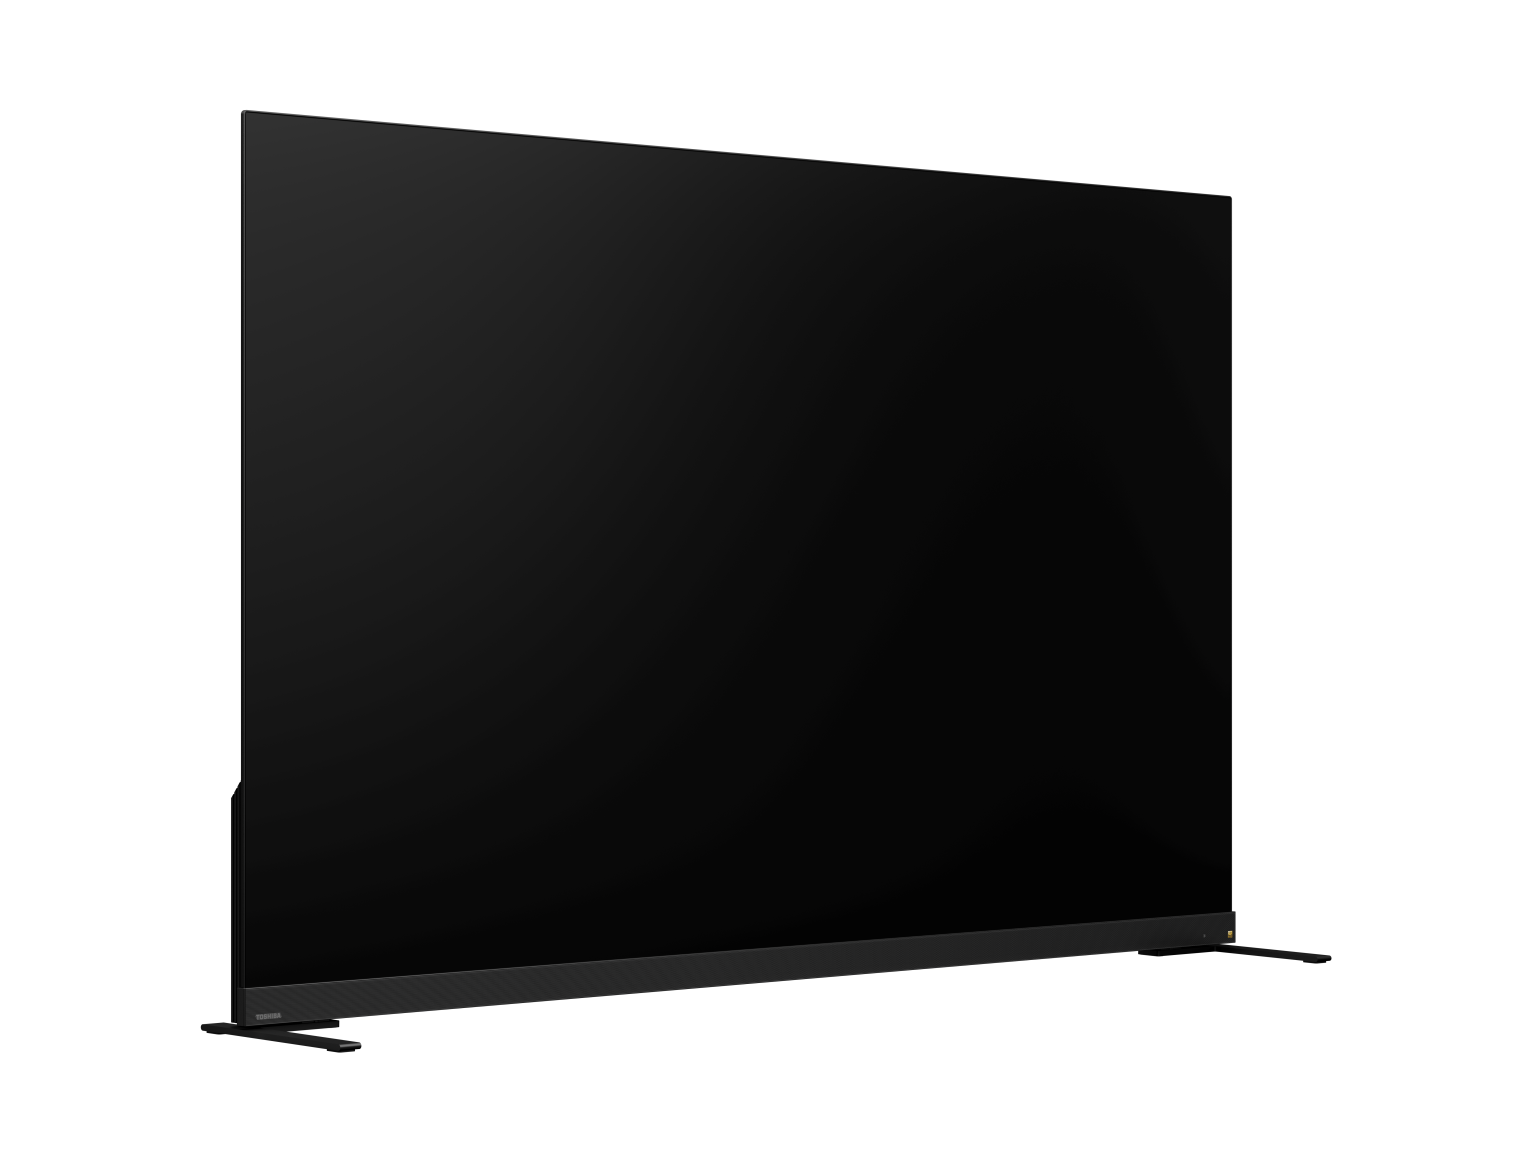 Vidaa Tivi TOSHIBA 65 inch 65X9900LP, Smart TV Màn Hình OLED 4K UHD - Loa 113W - Tần Số Quét 120Hz - Hàng Chính Hãng